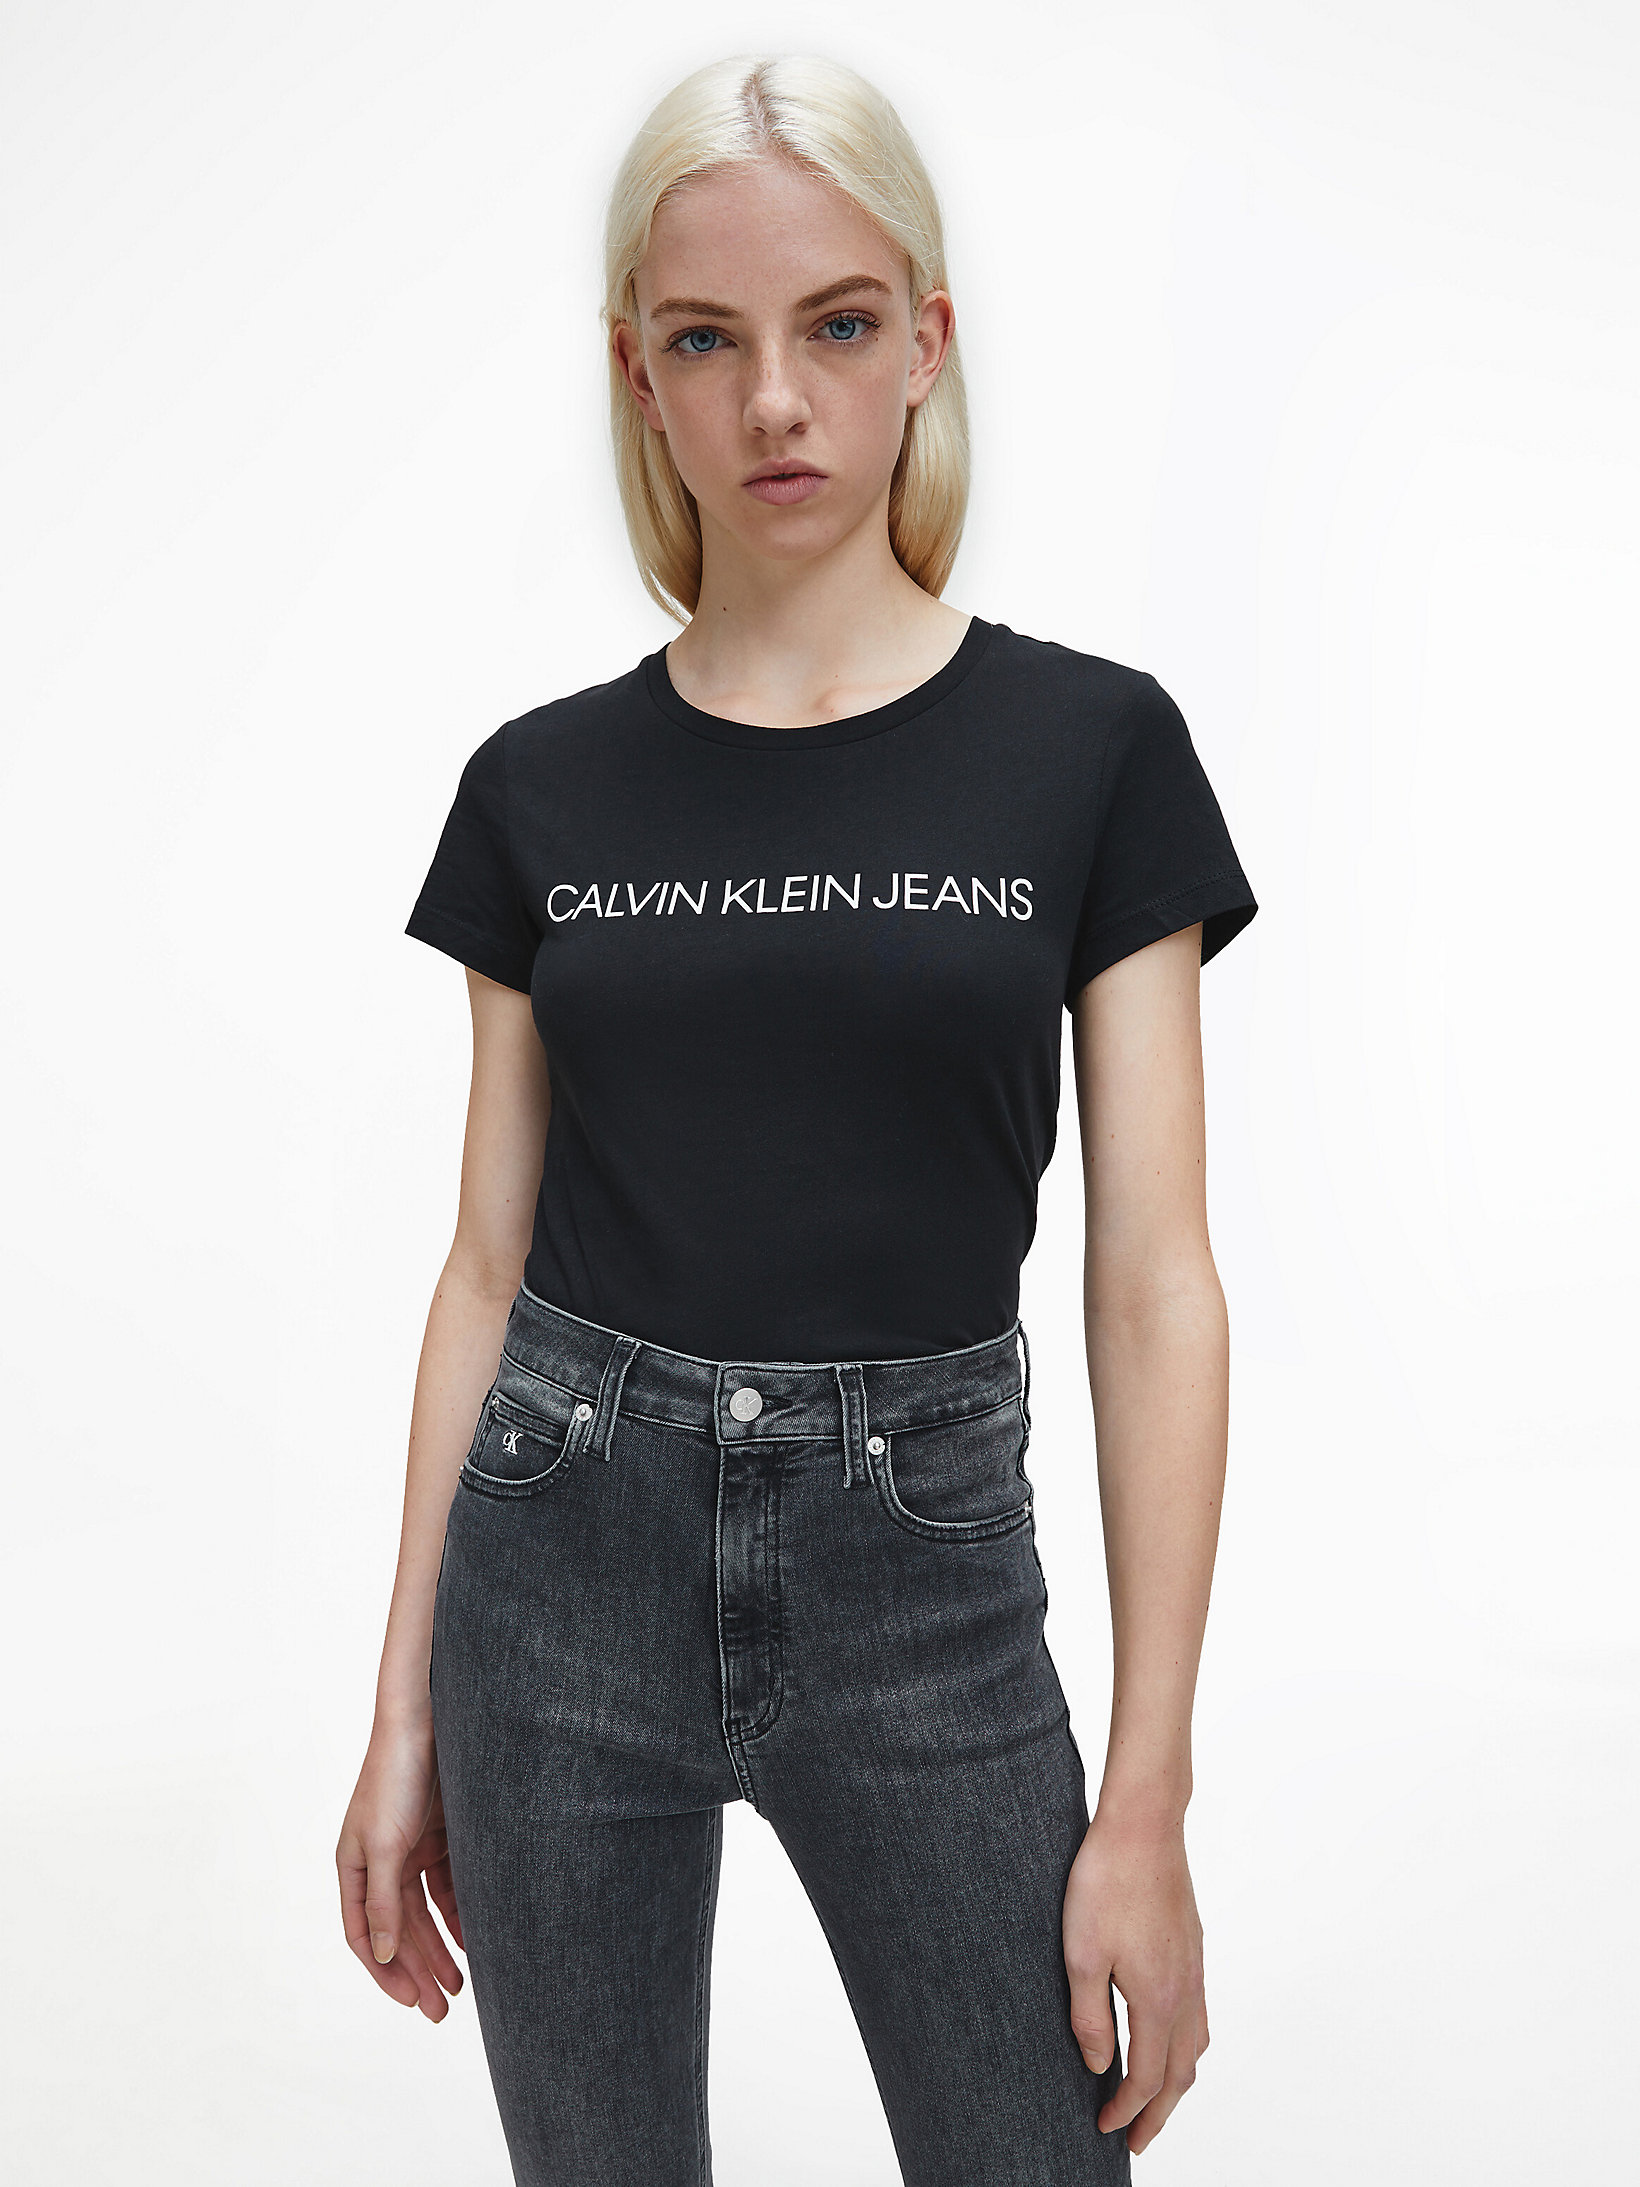 CK Black > Schmales Logo-T-Shirt > undefined Damen - Calvin Klein